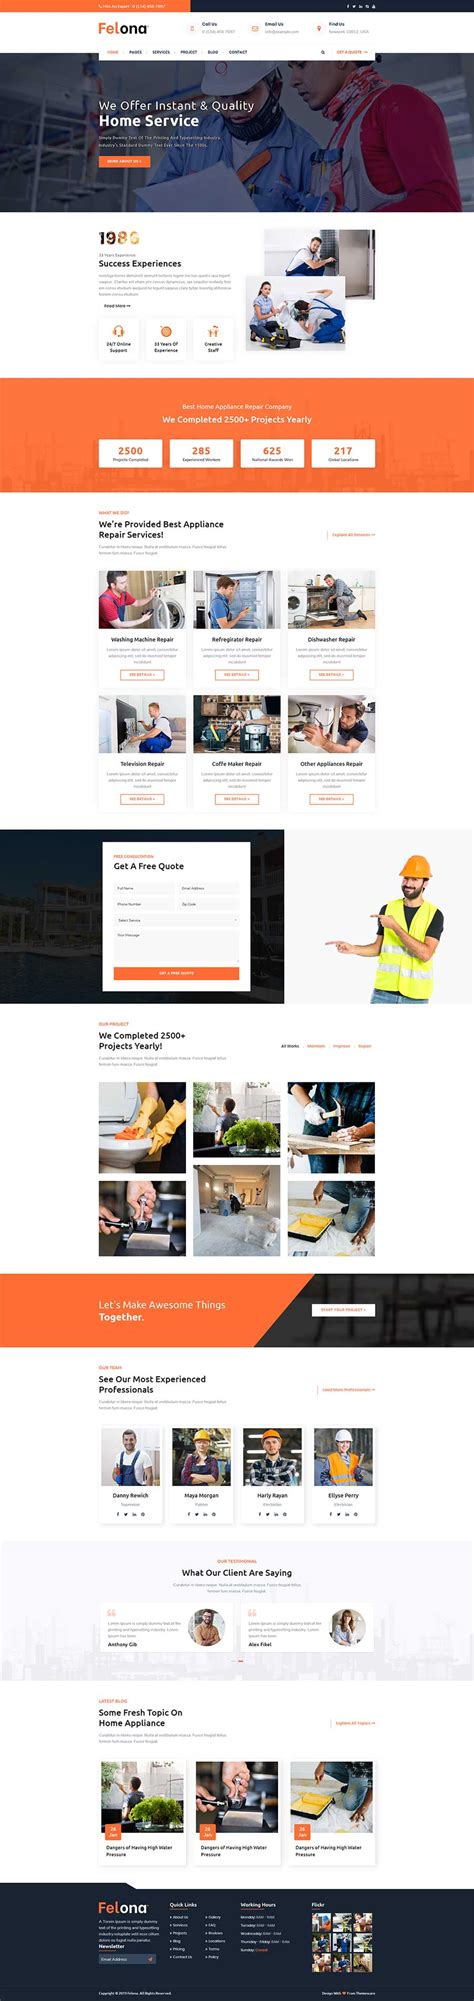 橙色宽屏大气html5电器维修公司响应式网站模板 - 素材火